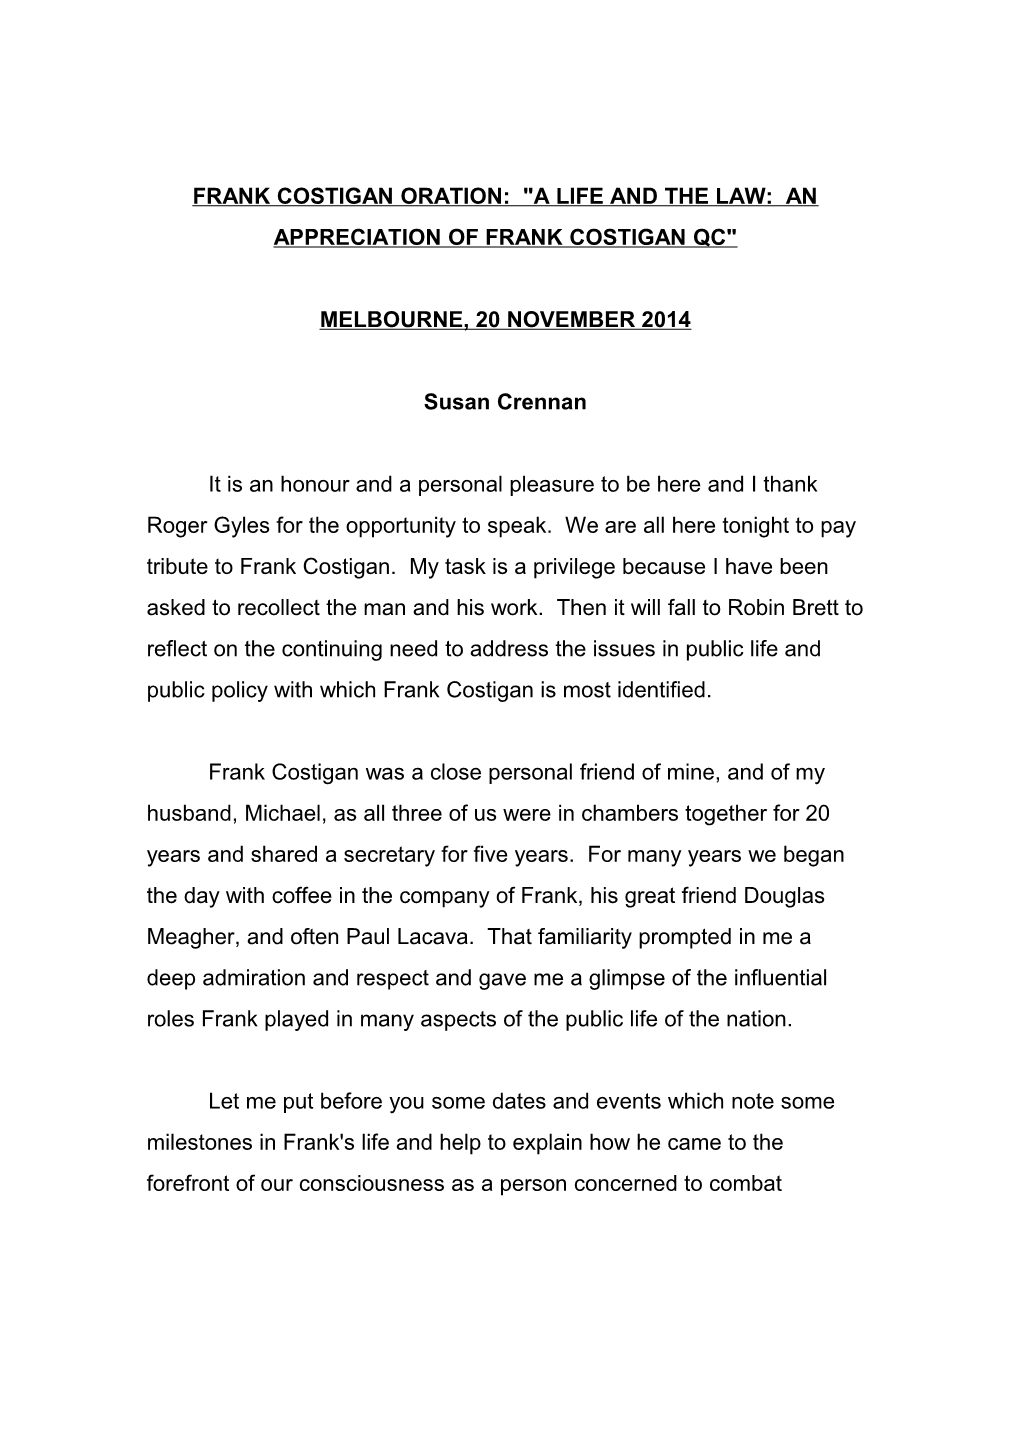 Frank Costigan Oration: a Life and the Law: an Appreciation of Frank Costigan Qc